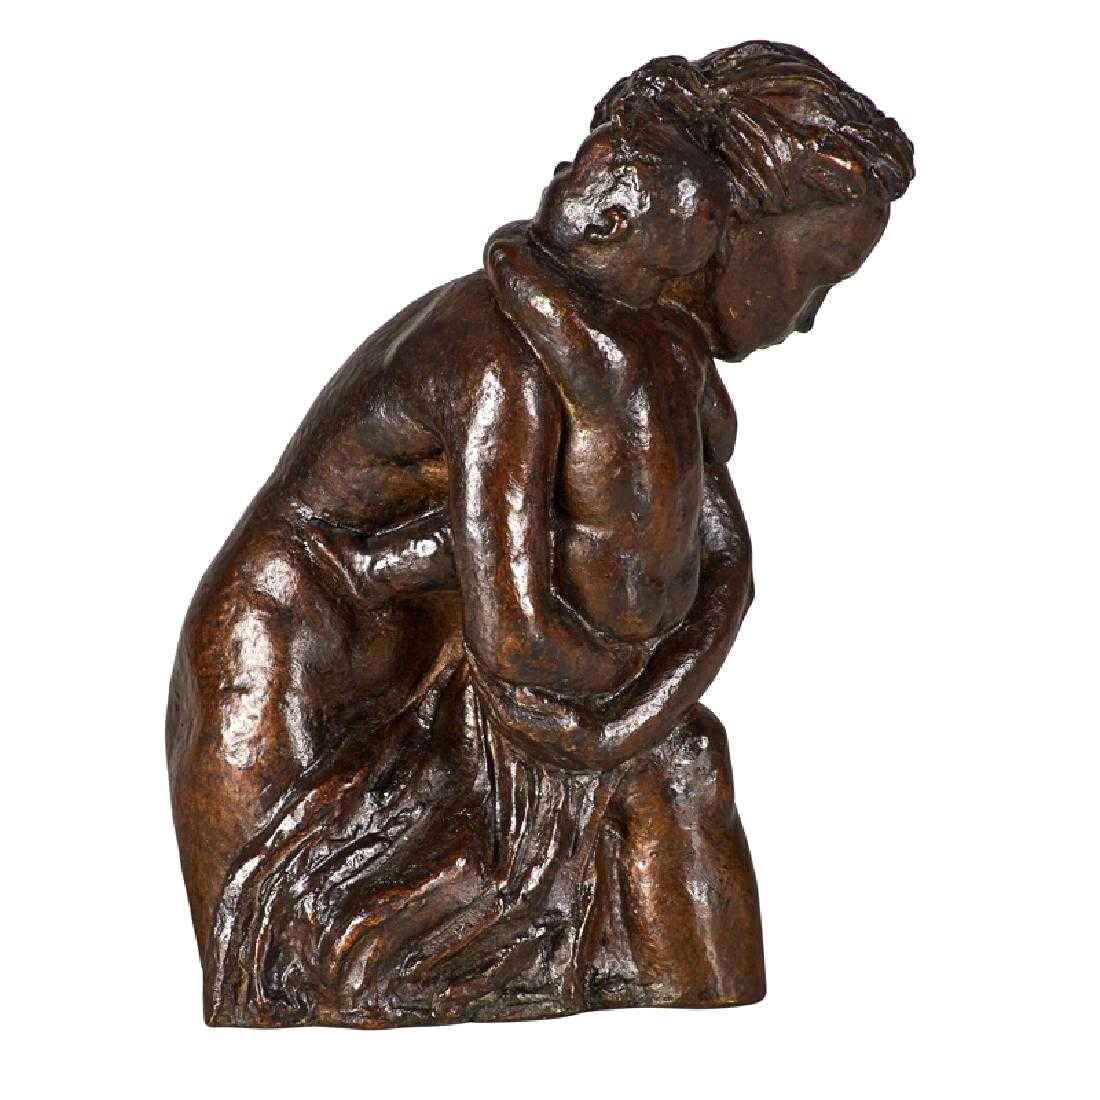 Patinierte Bronze von Mutter und Kind aus Guss